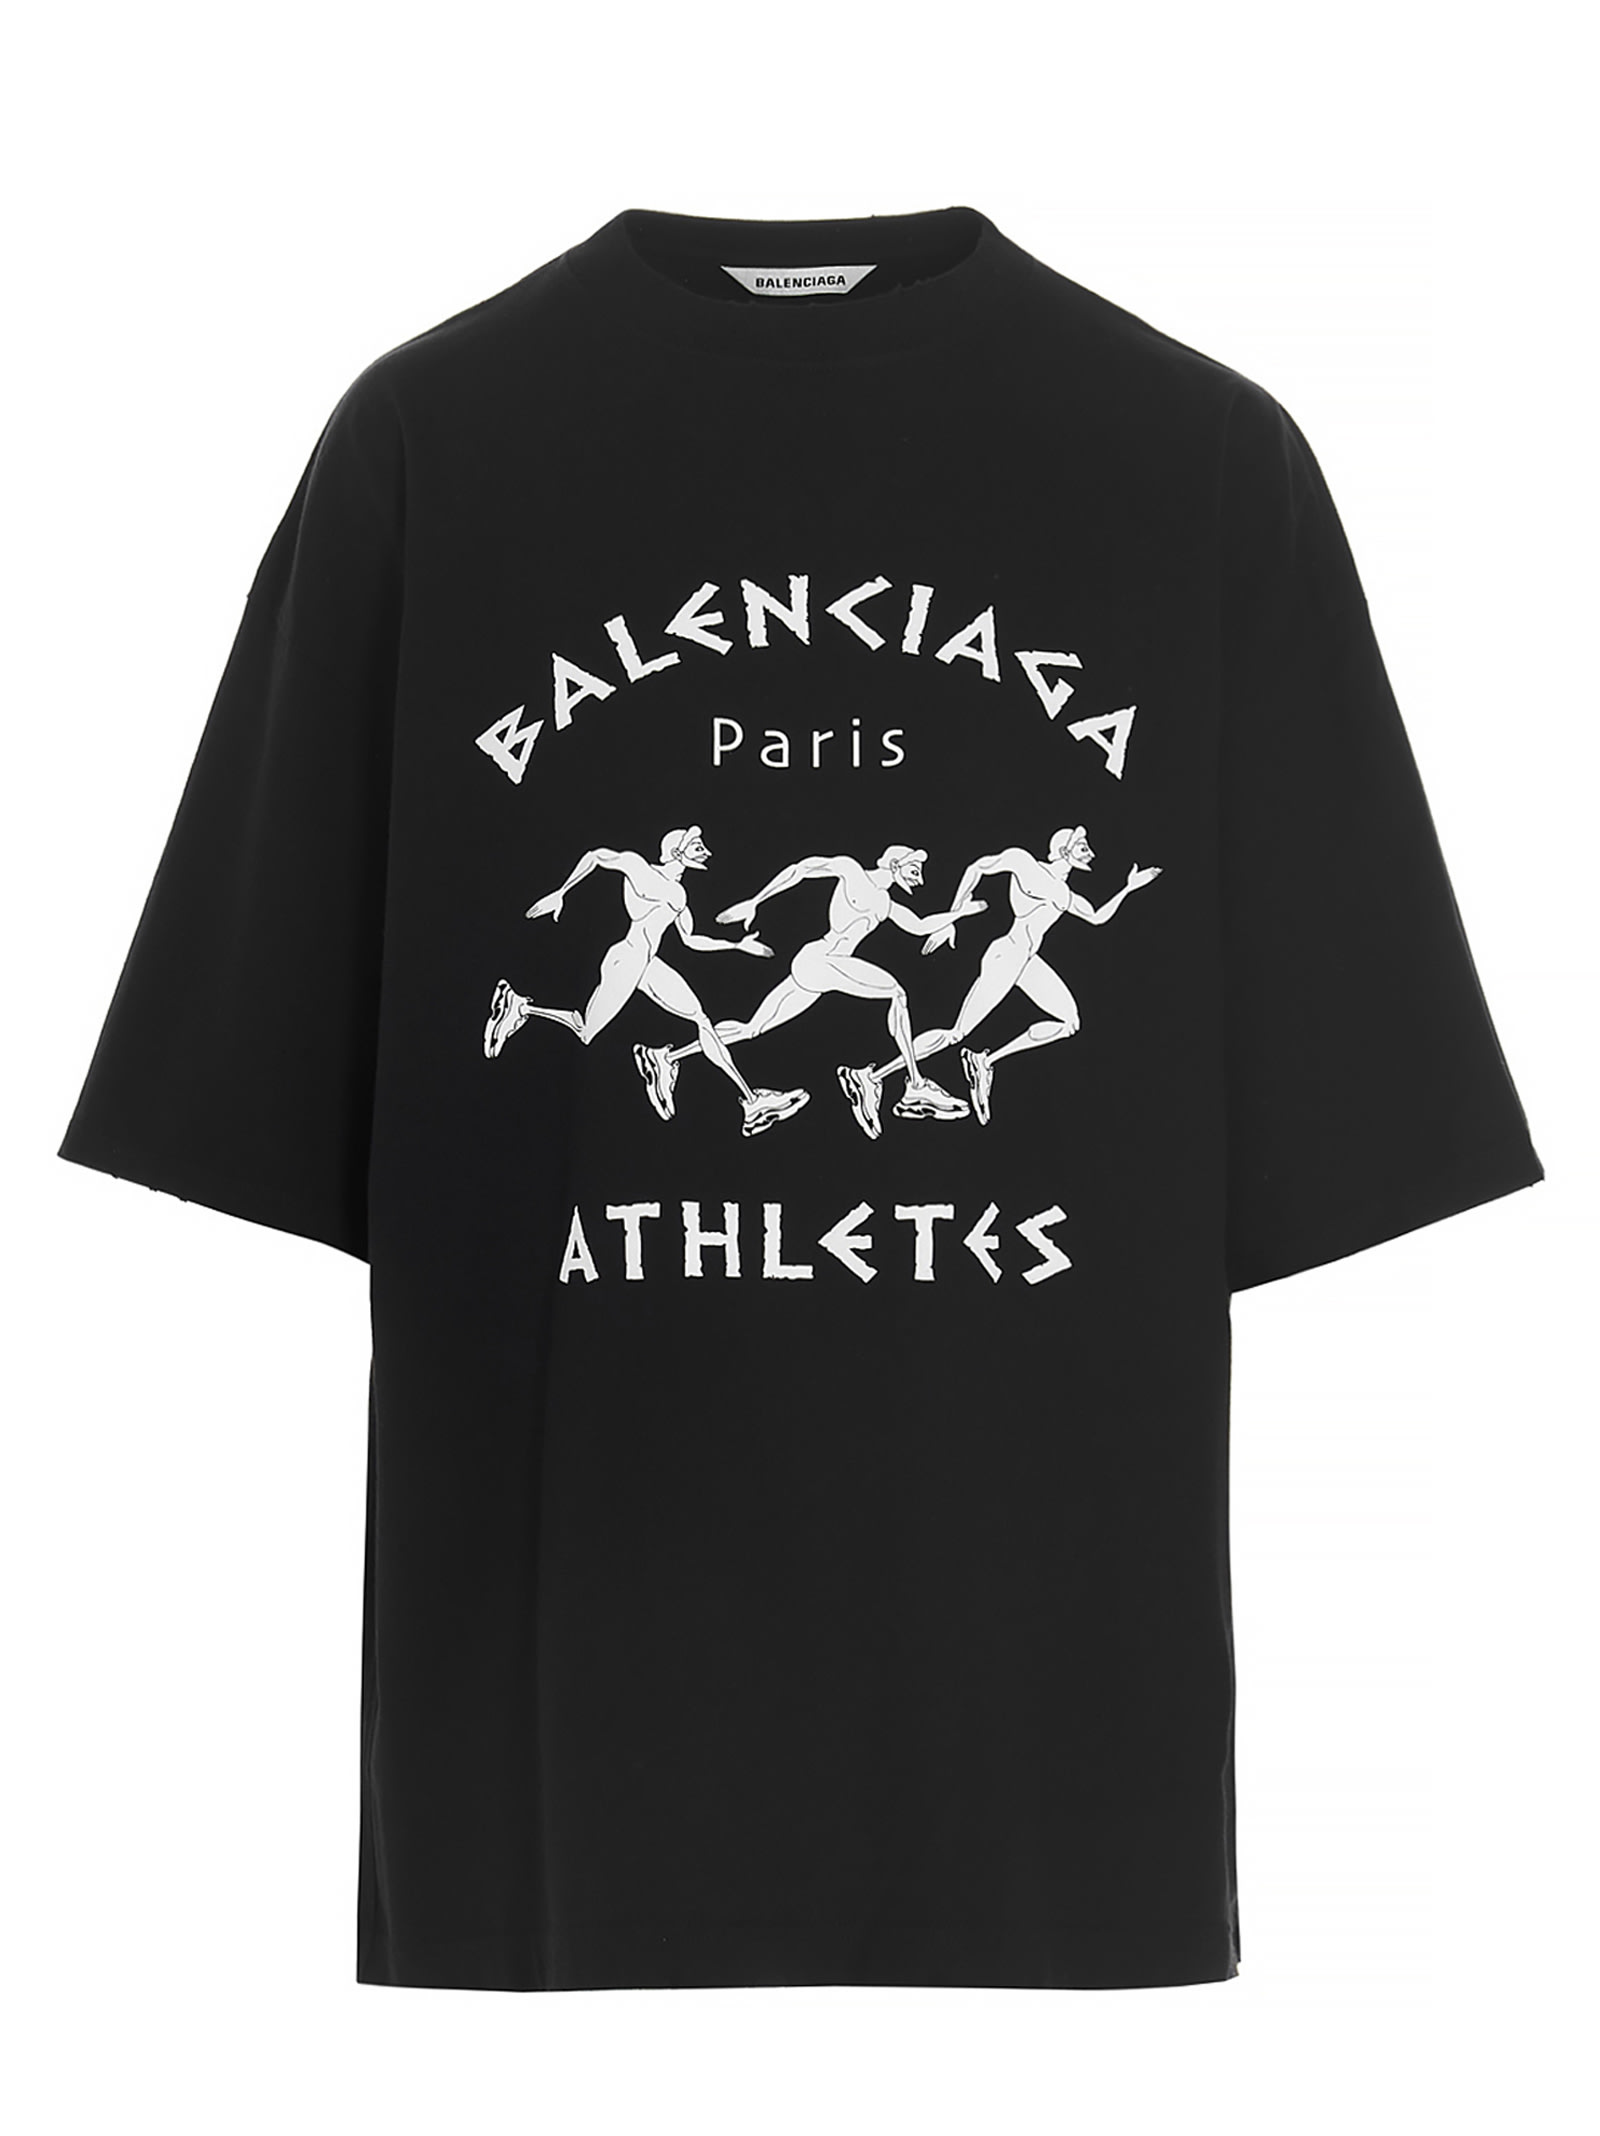 Balenciaga athlets T-shirt